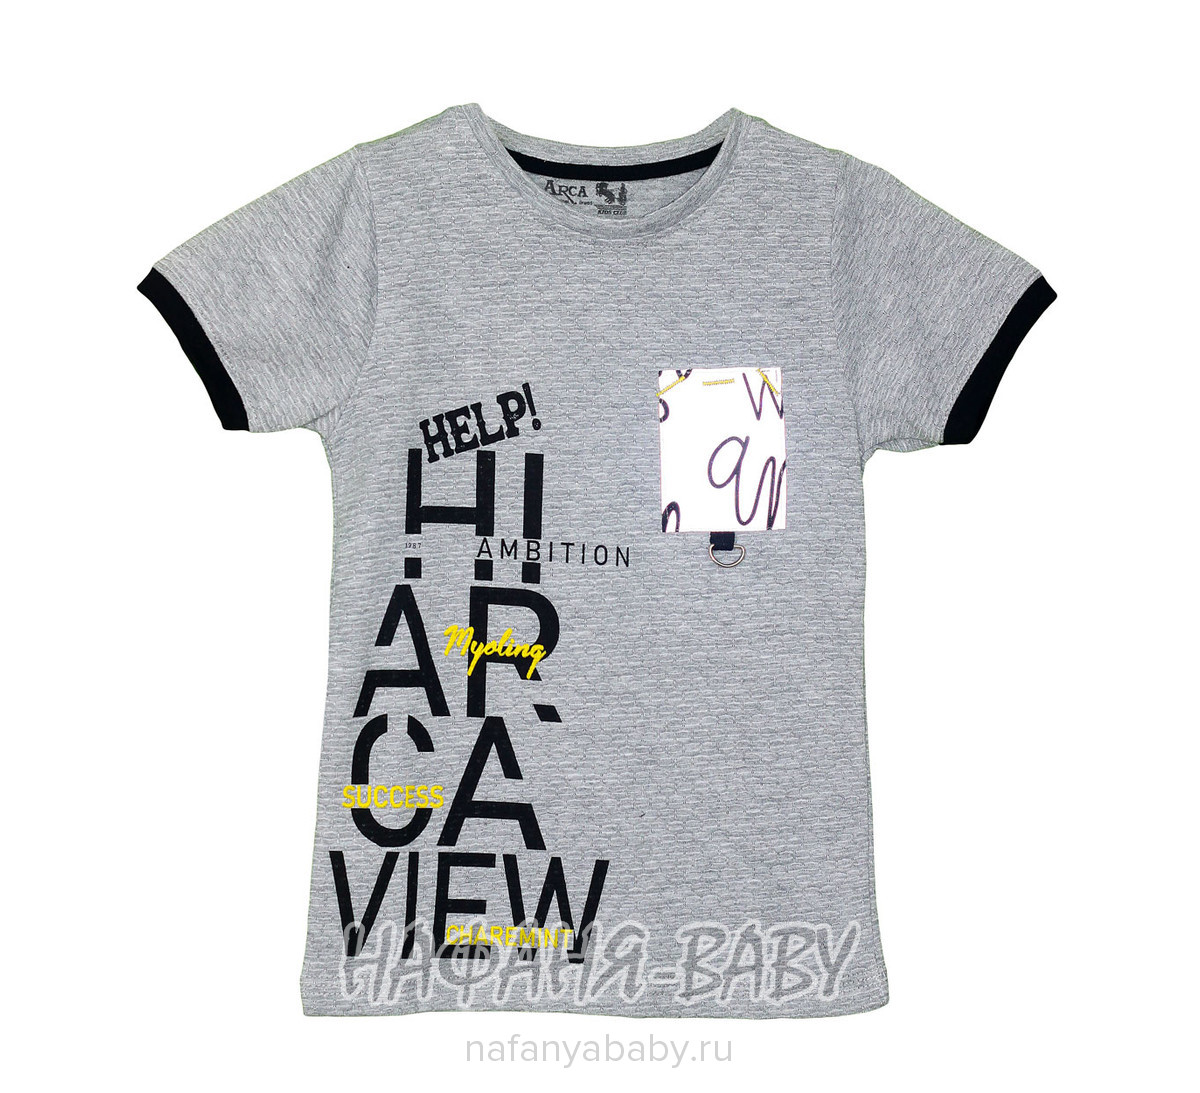 Детская футболка ARCA арт: 6014-1, 1-4 года, 5-9 лет, цвет серый, оптом Турция